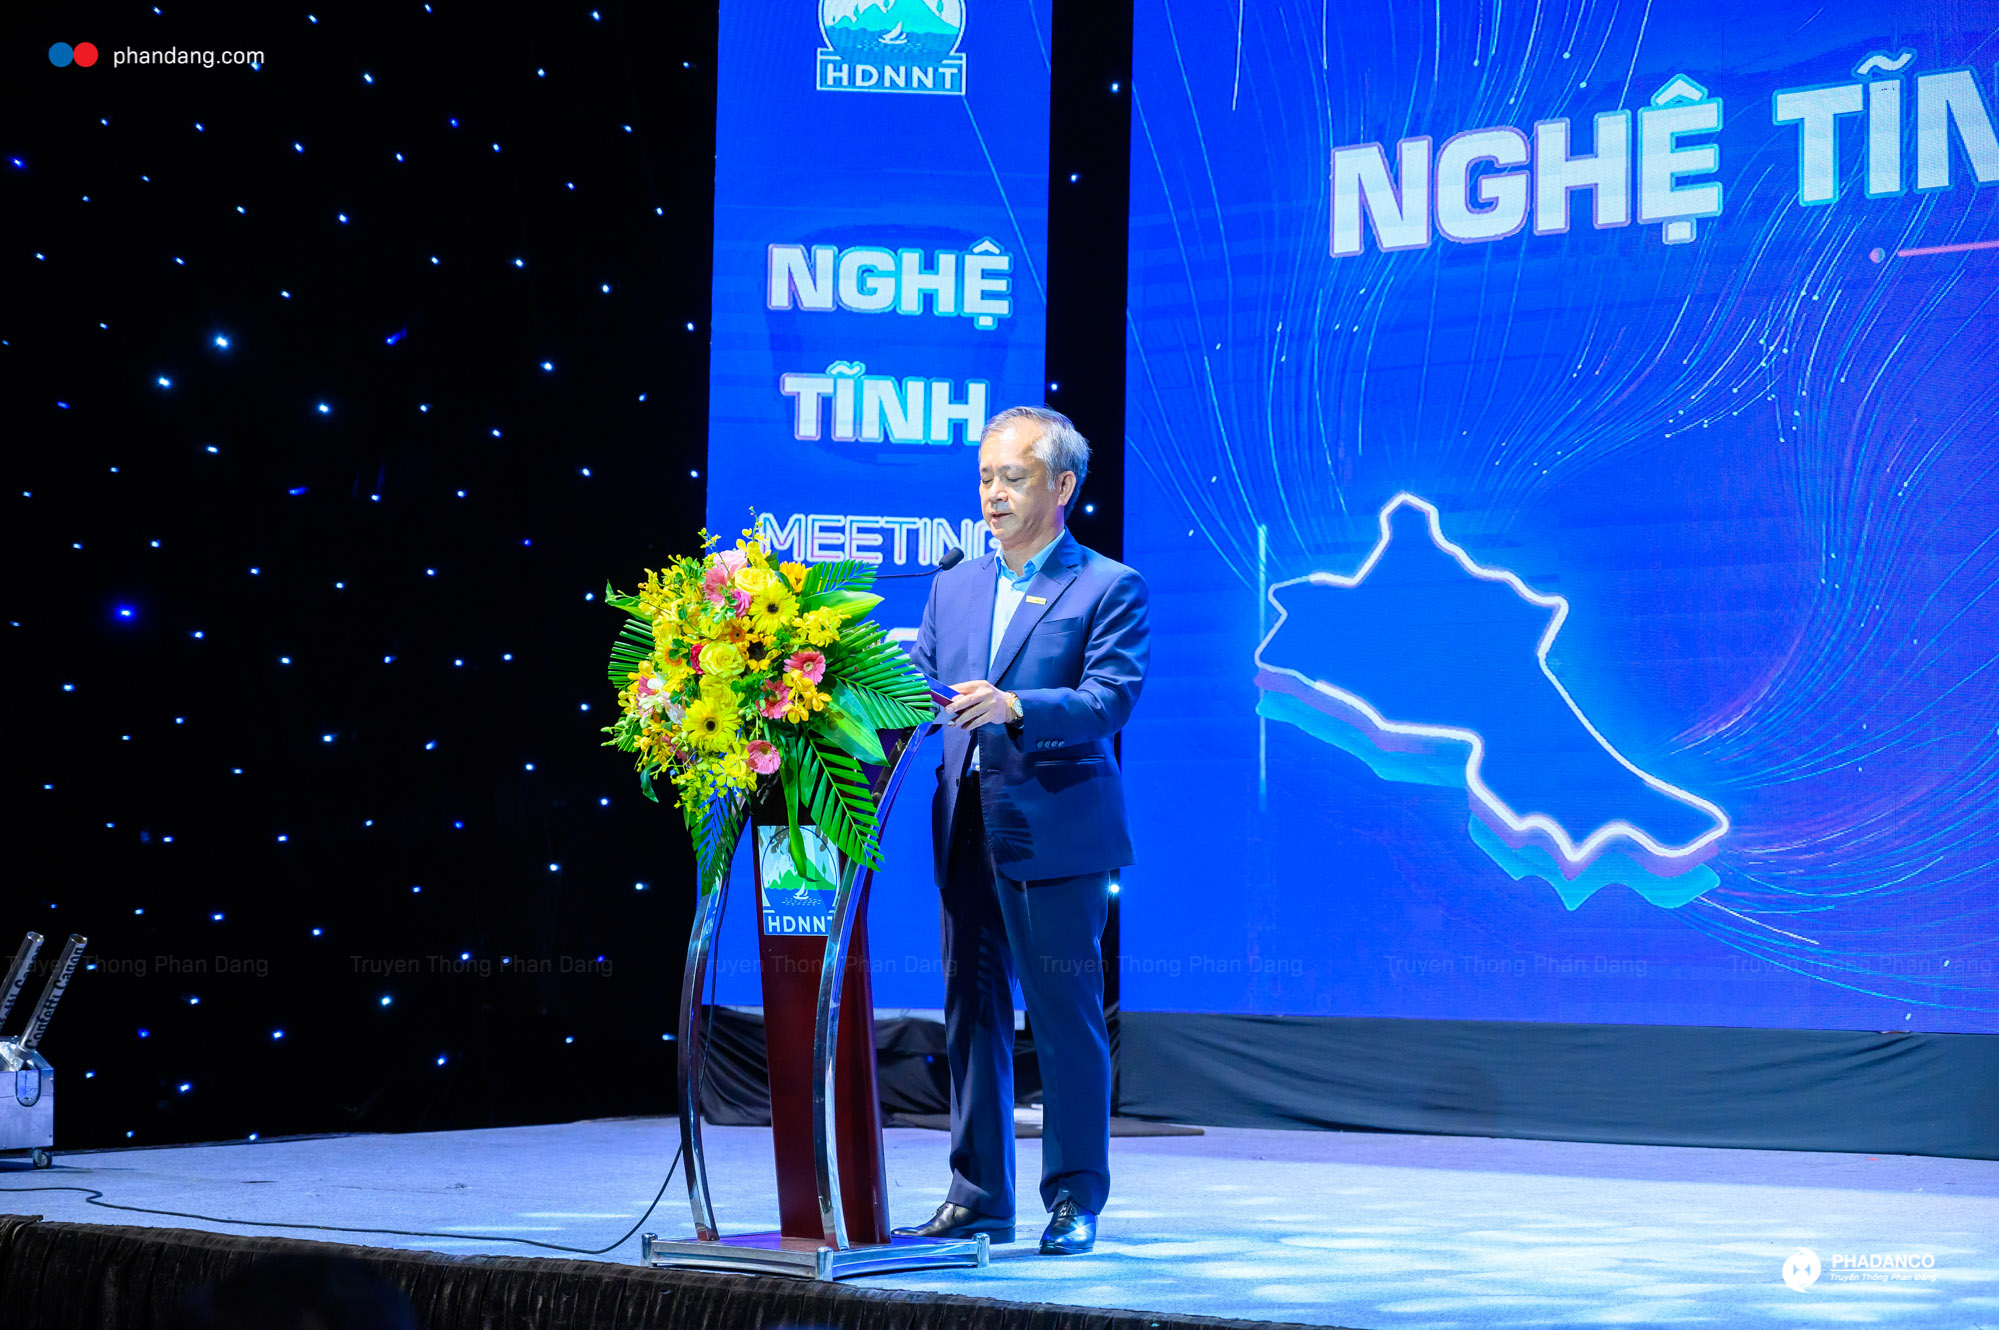 Những chia sẻ của ông Phan Đình Tuệ – chủ tịch hội doanh nghiệp Nghệ Tĩnh tại TP.HCM